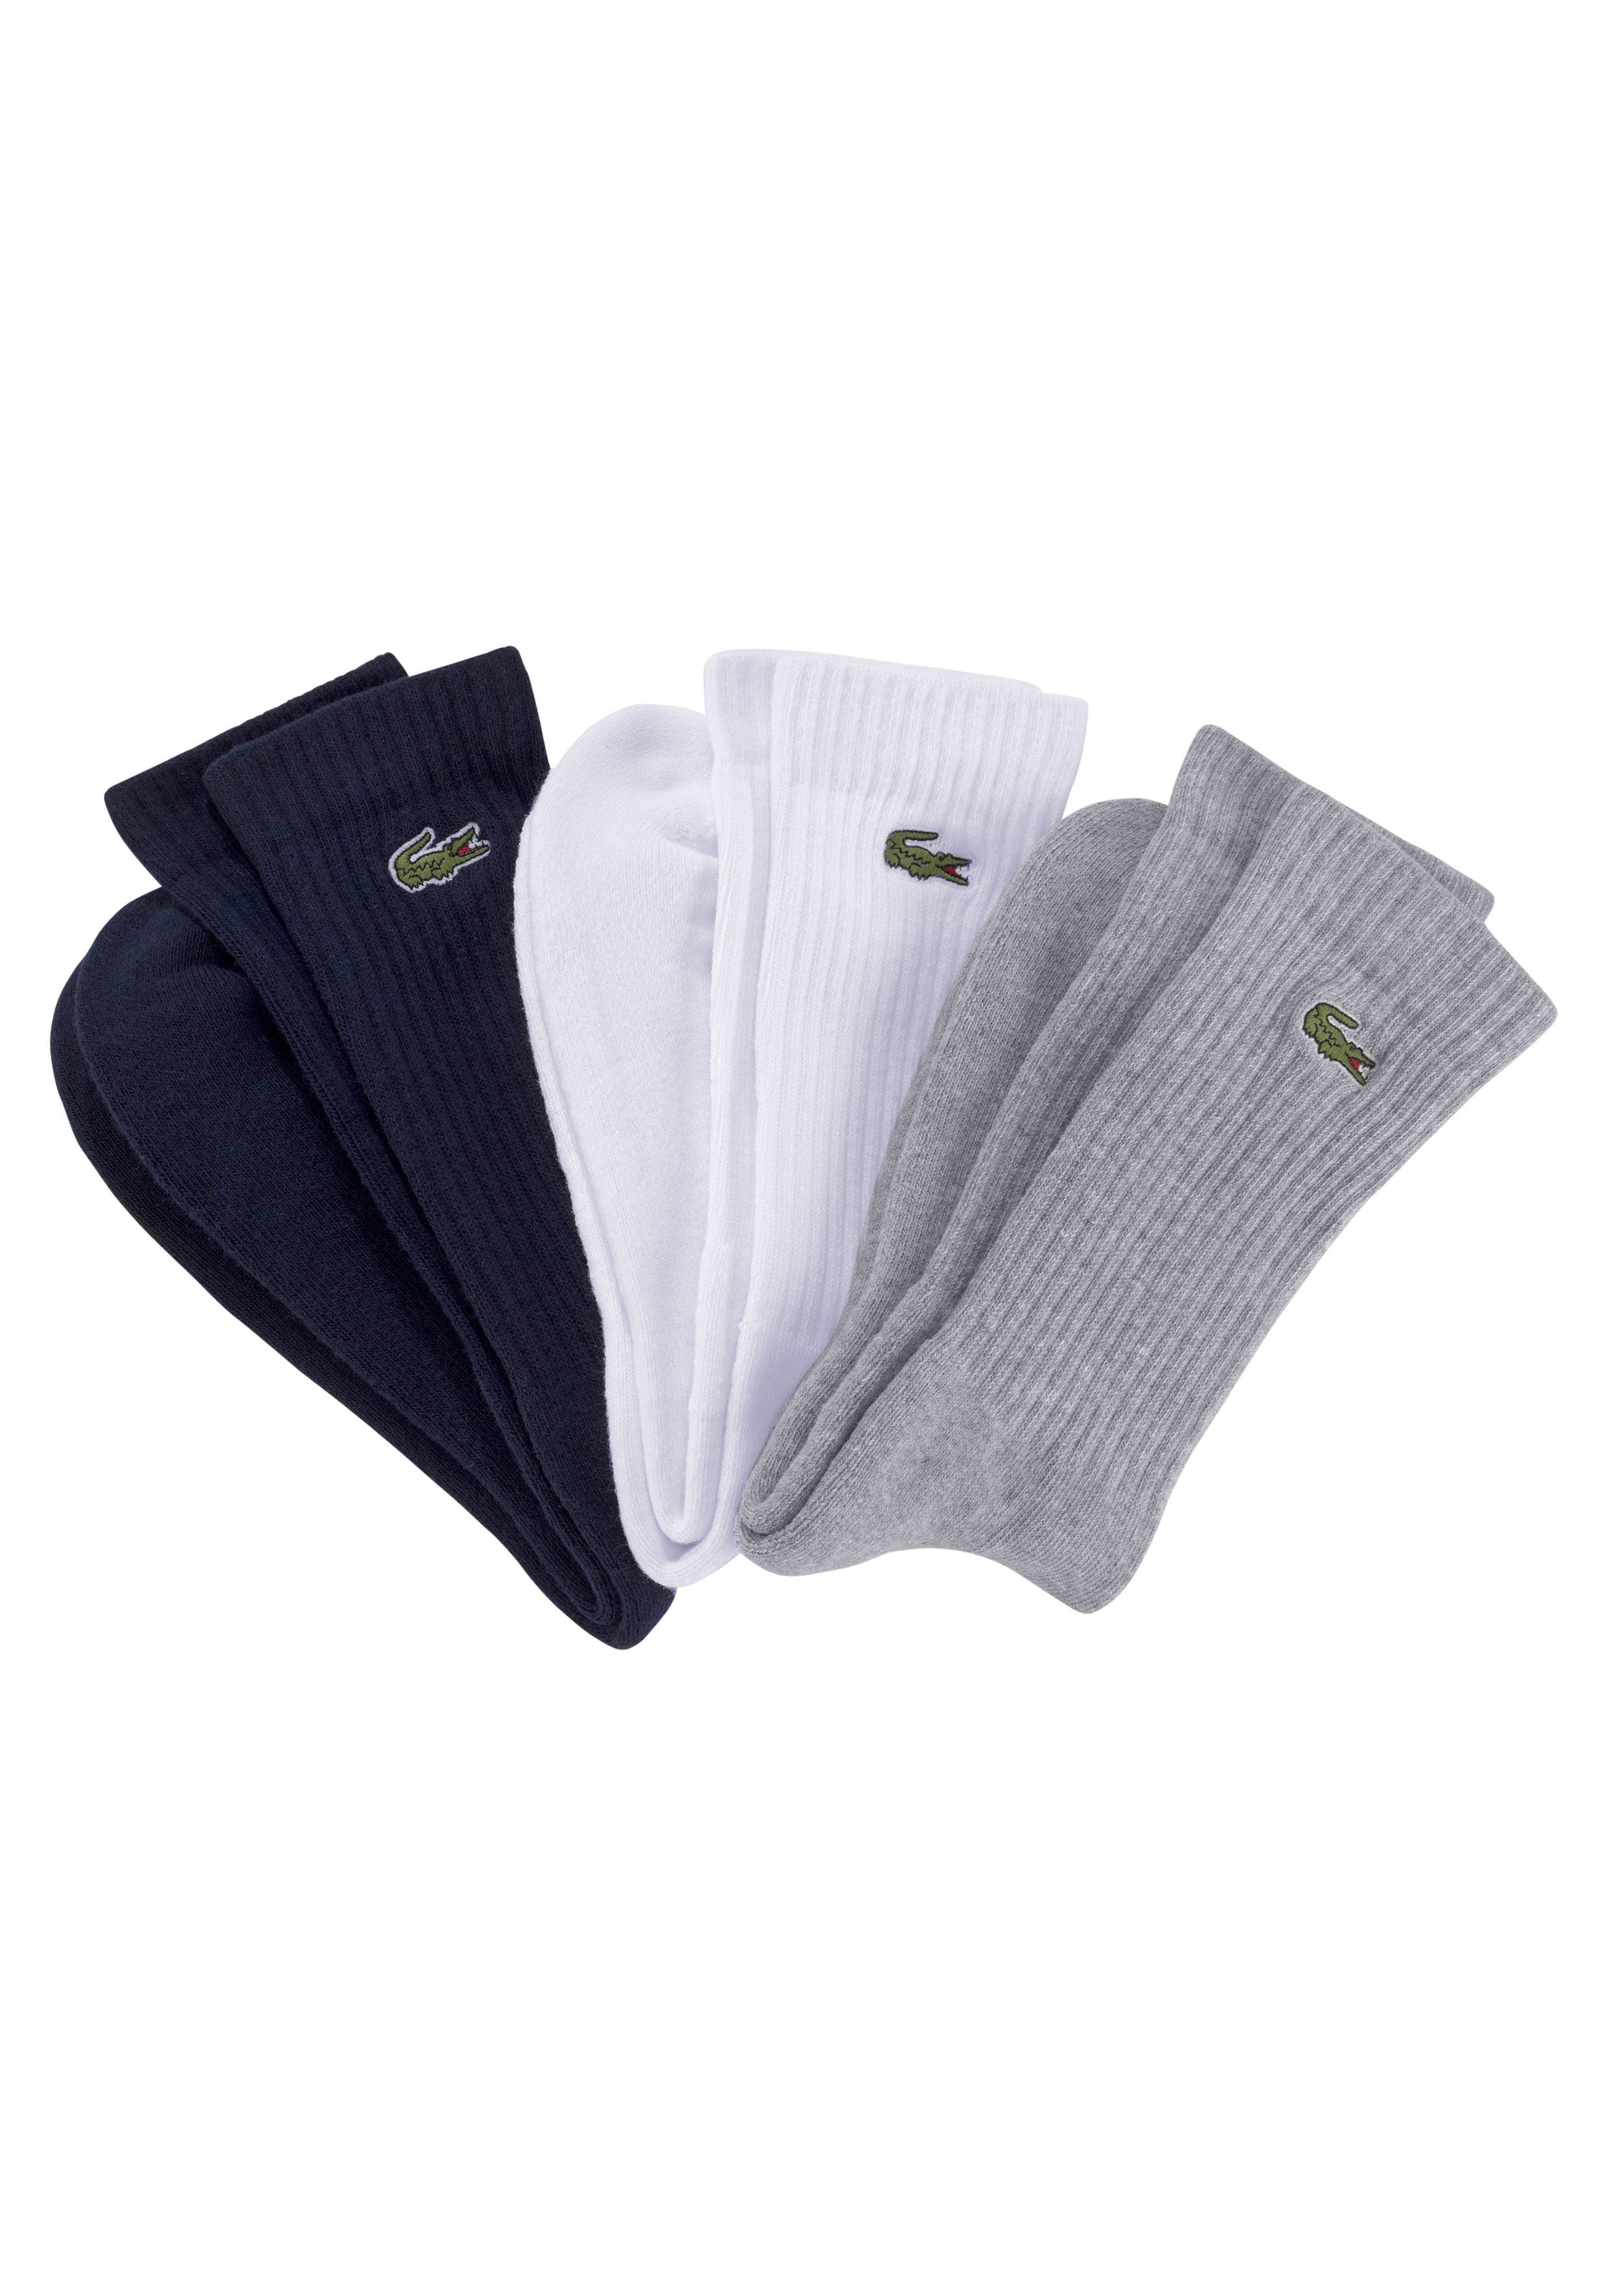 und Langlebigkeit (3-Paar) grau Komfort Tennissocken hochwertiger hoher Lacoste Baumwollmix, weiß schwarz